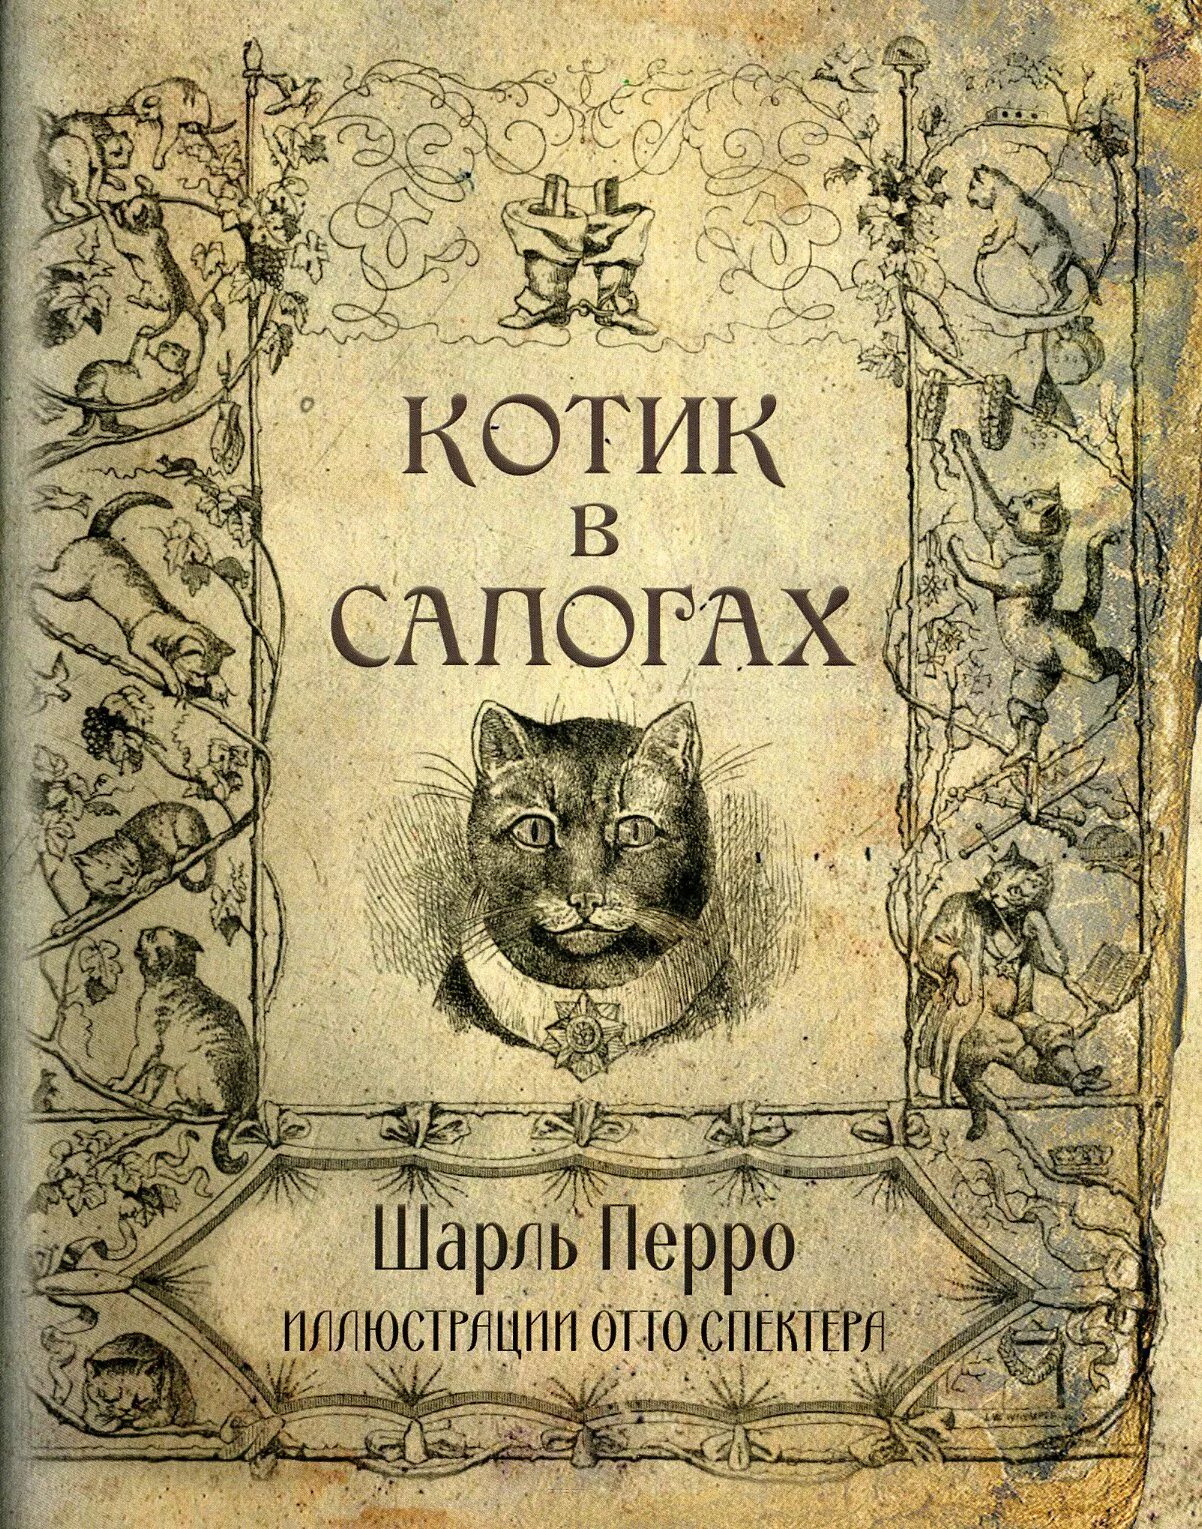 Шарлей кот. Первое издание сказок Шарля Перро.